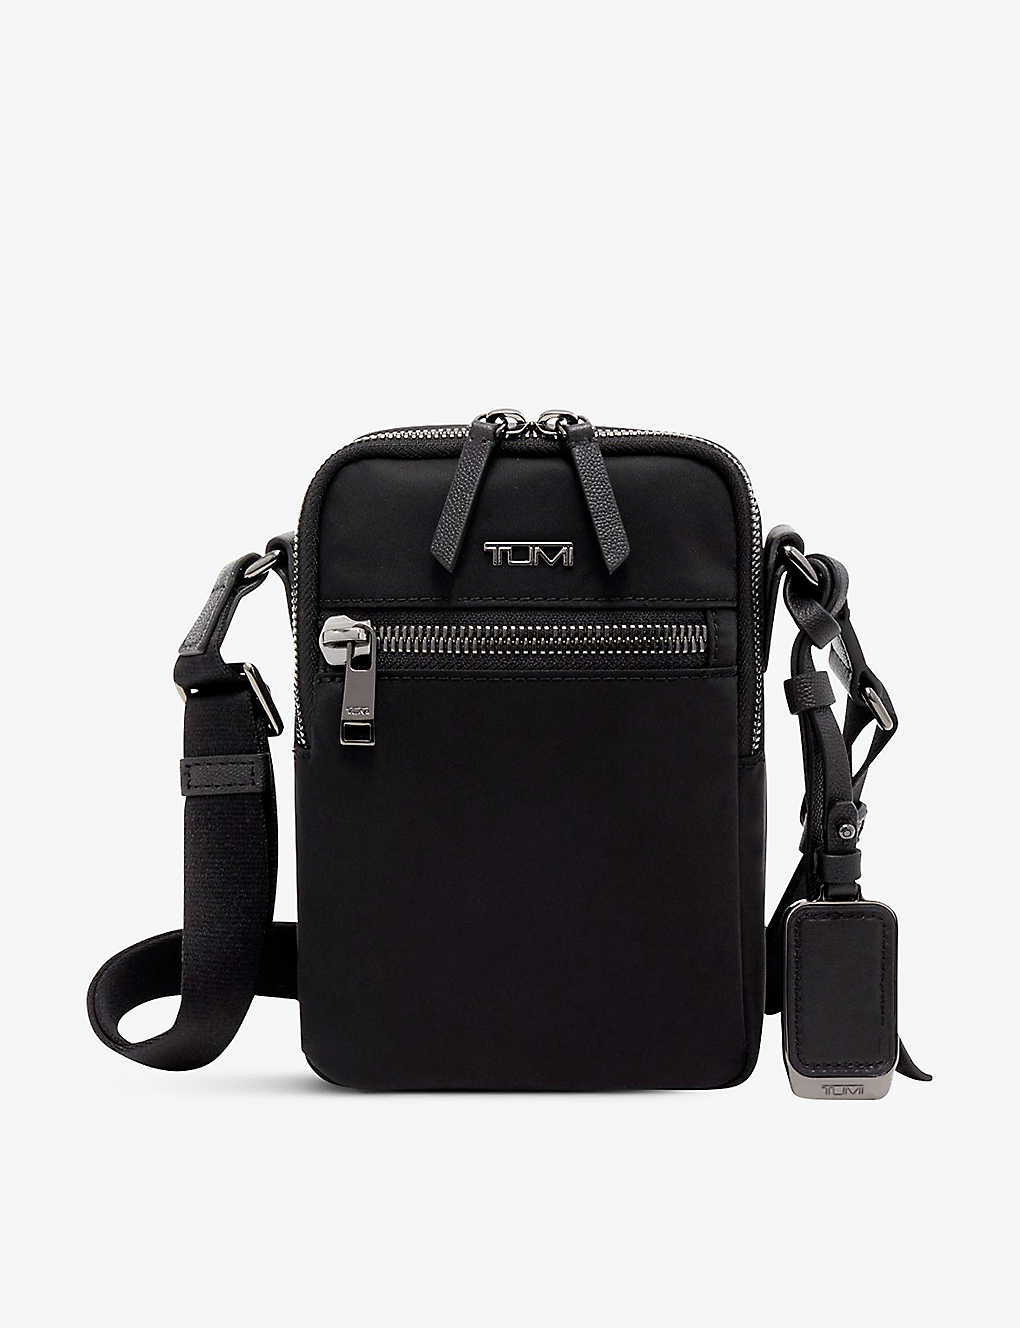 Tumi Persia Double-zip Branded Nylon Crossbody Bag In Black/gunmetal